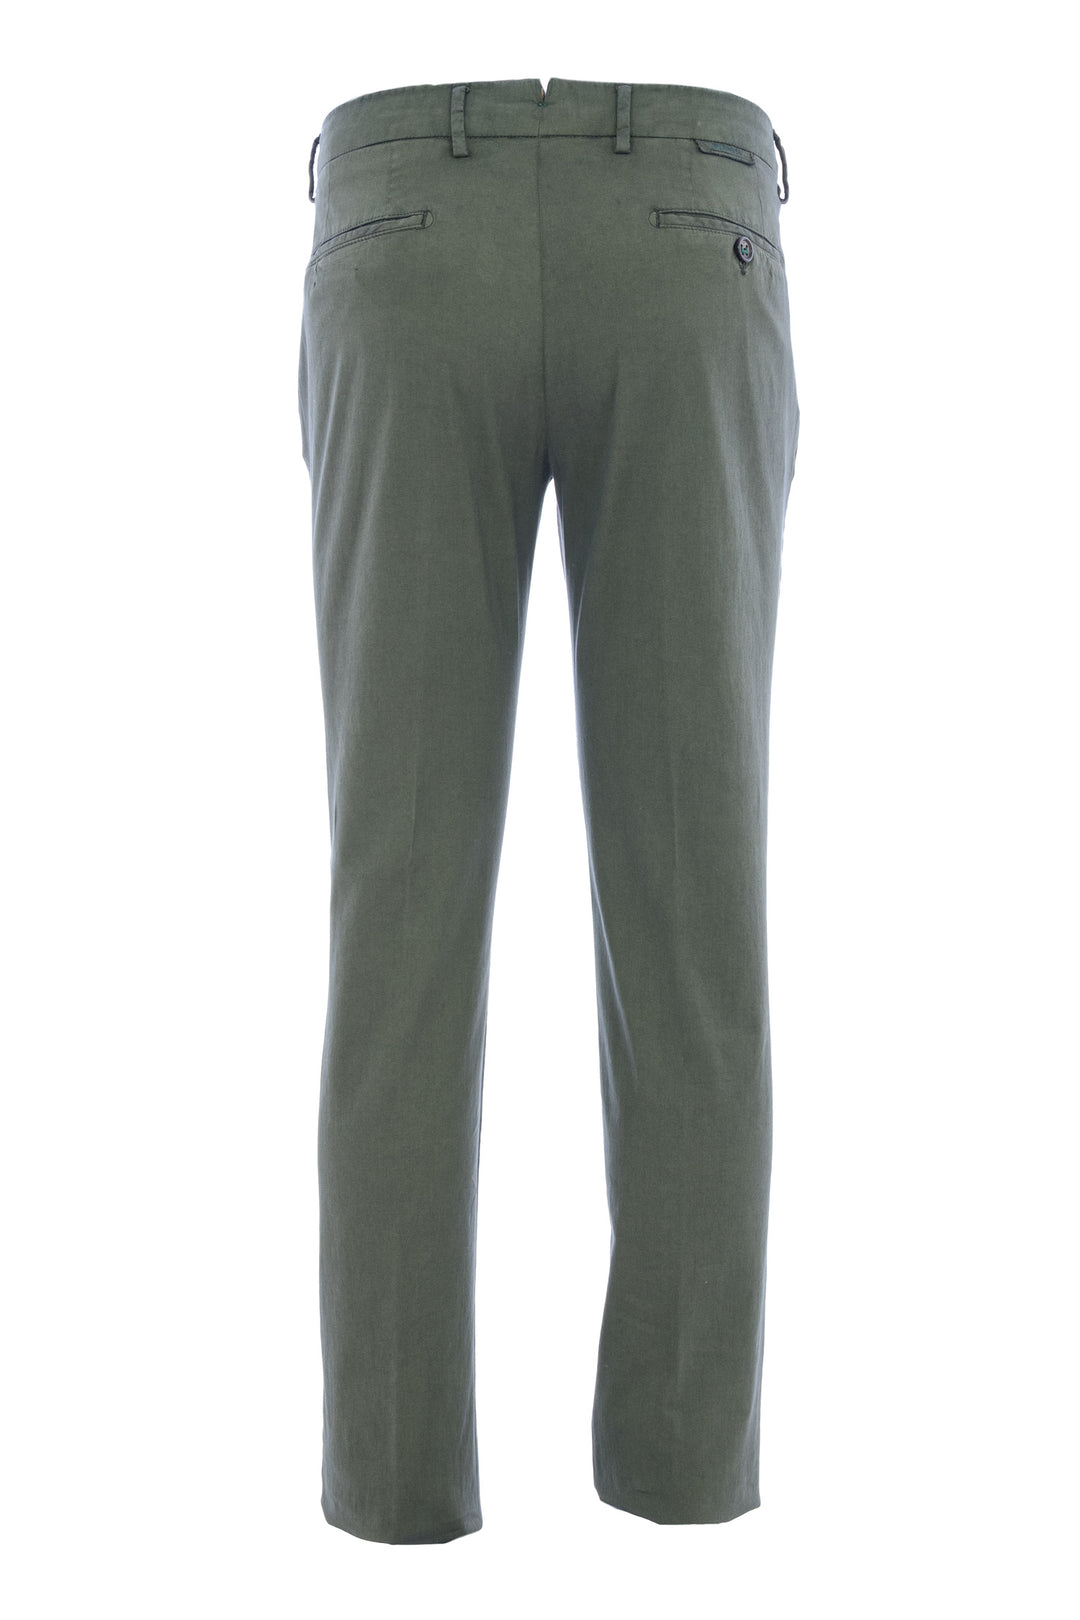 BERWICH Pantalone in misto cotone e seta verde militare - Mancinelli 1954